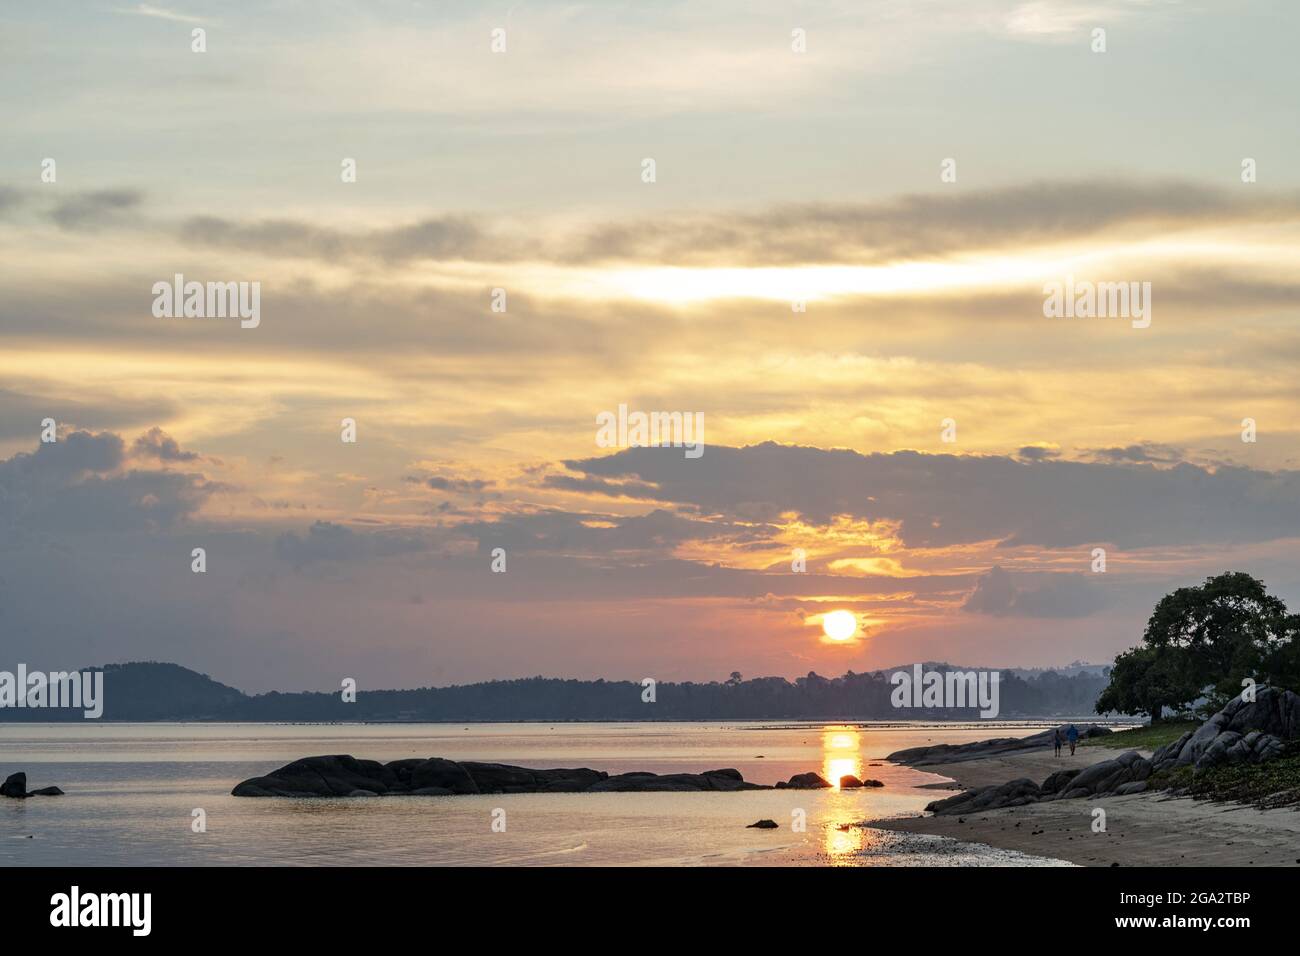 Coucher de soleil sur la plage sur l'île de Ko Samui dans le golfe de Thaïlande; Ko Samui, Surat Thani, Thaïlande Banque D'Images